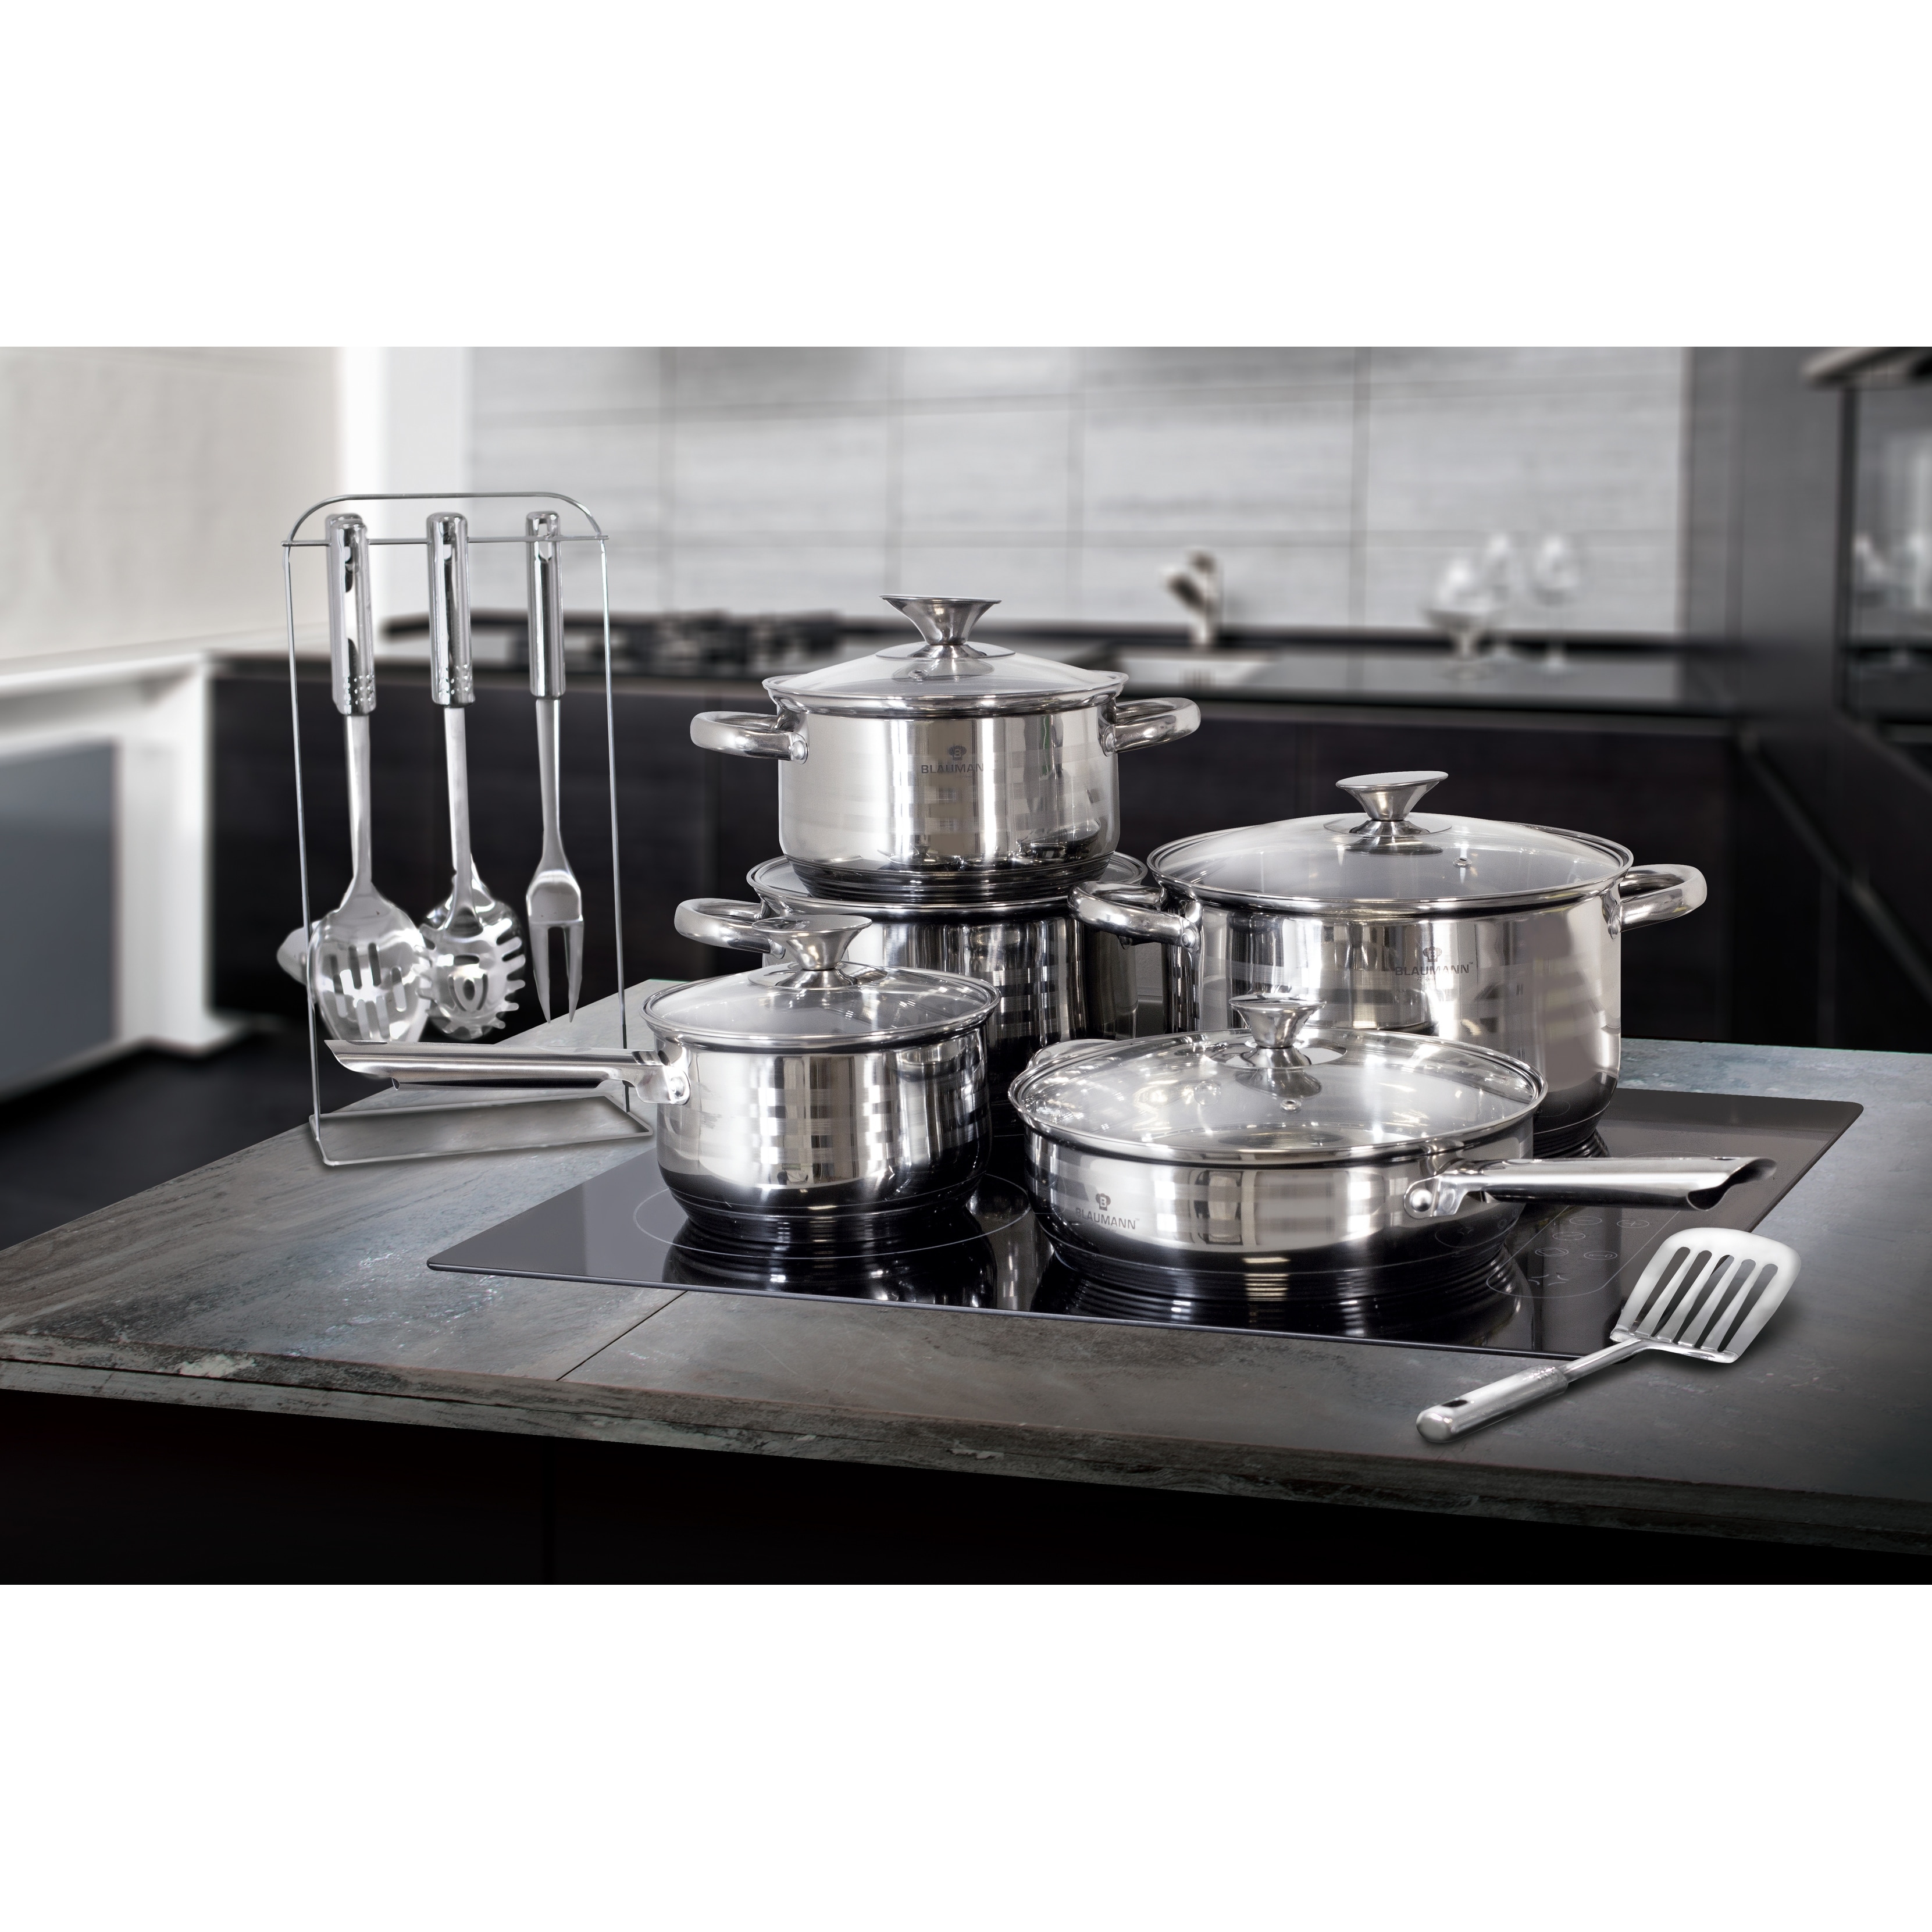 Blaumann 17-Piece Jumbo Stainless Steel Cookware Set - Bed Bath & Beyond -  34133840